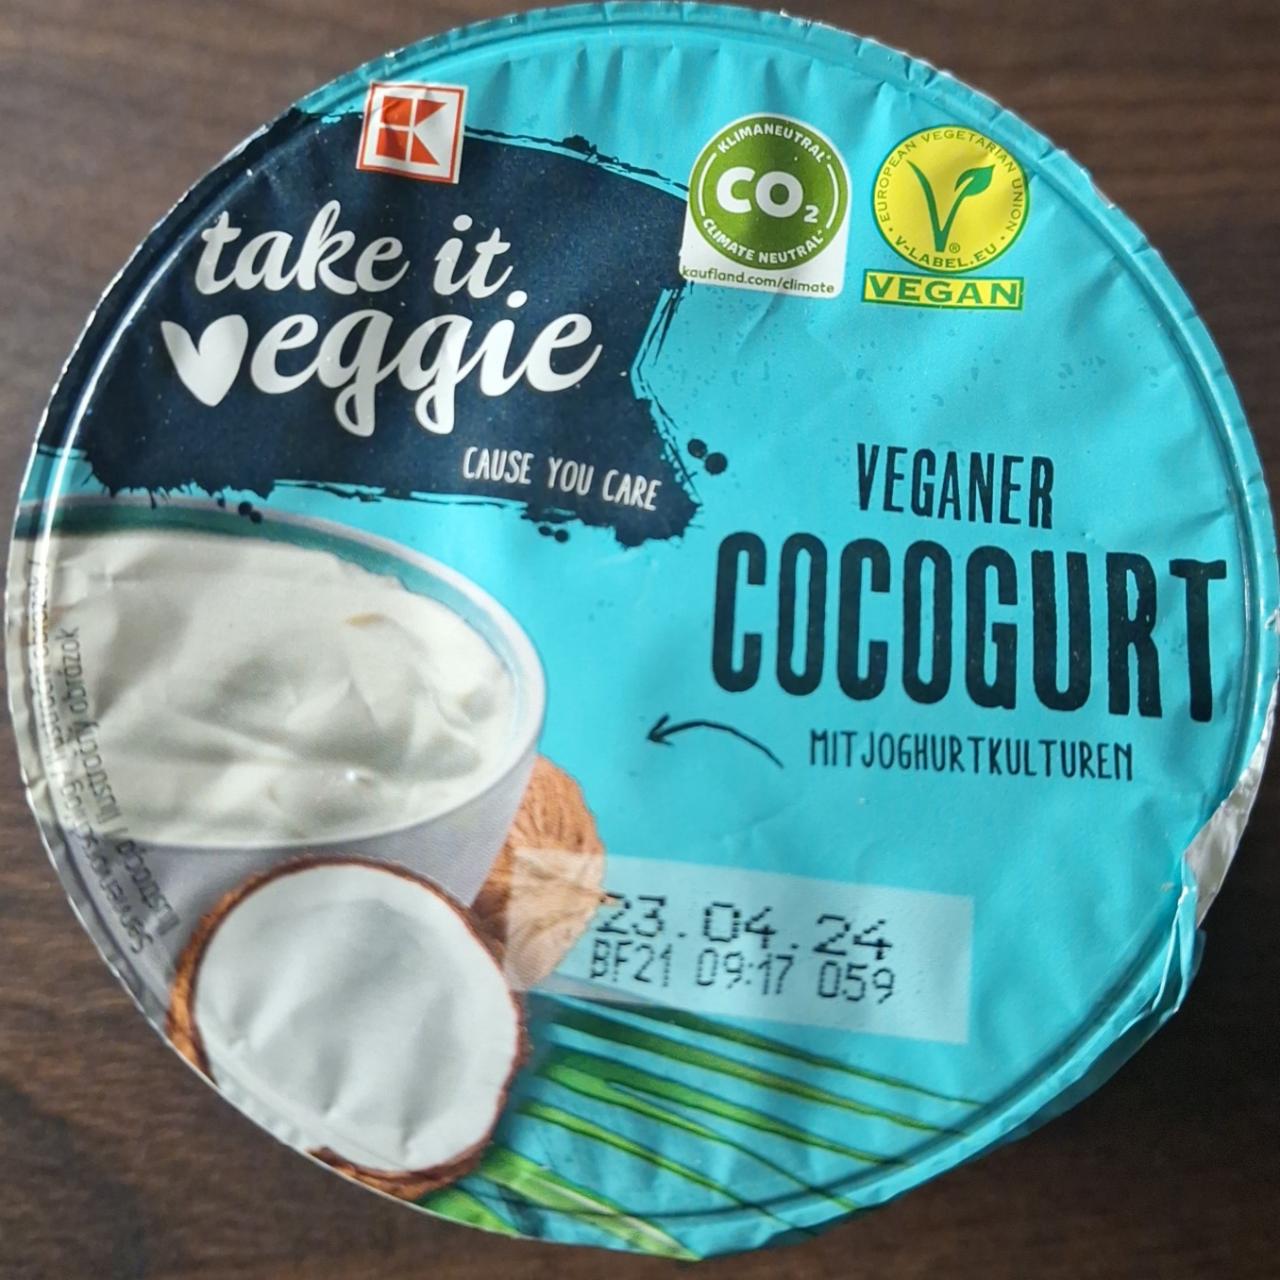 Zdjęcia - Veganer Cocogurt K-take it veggie